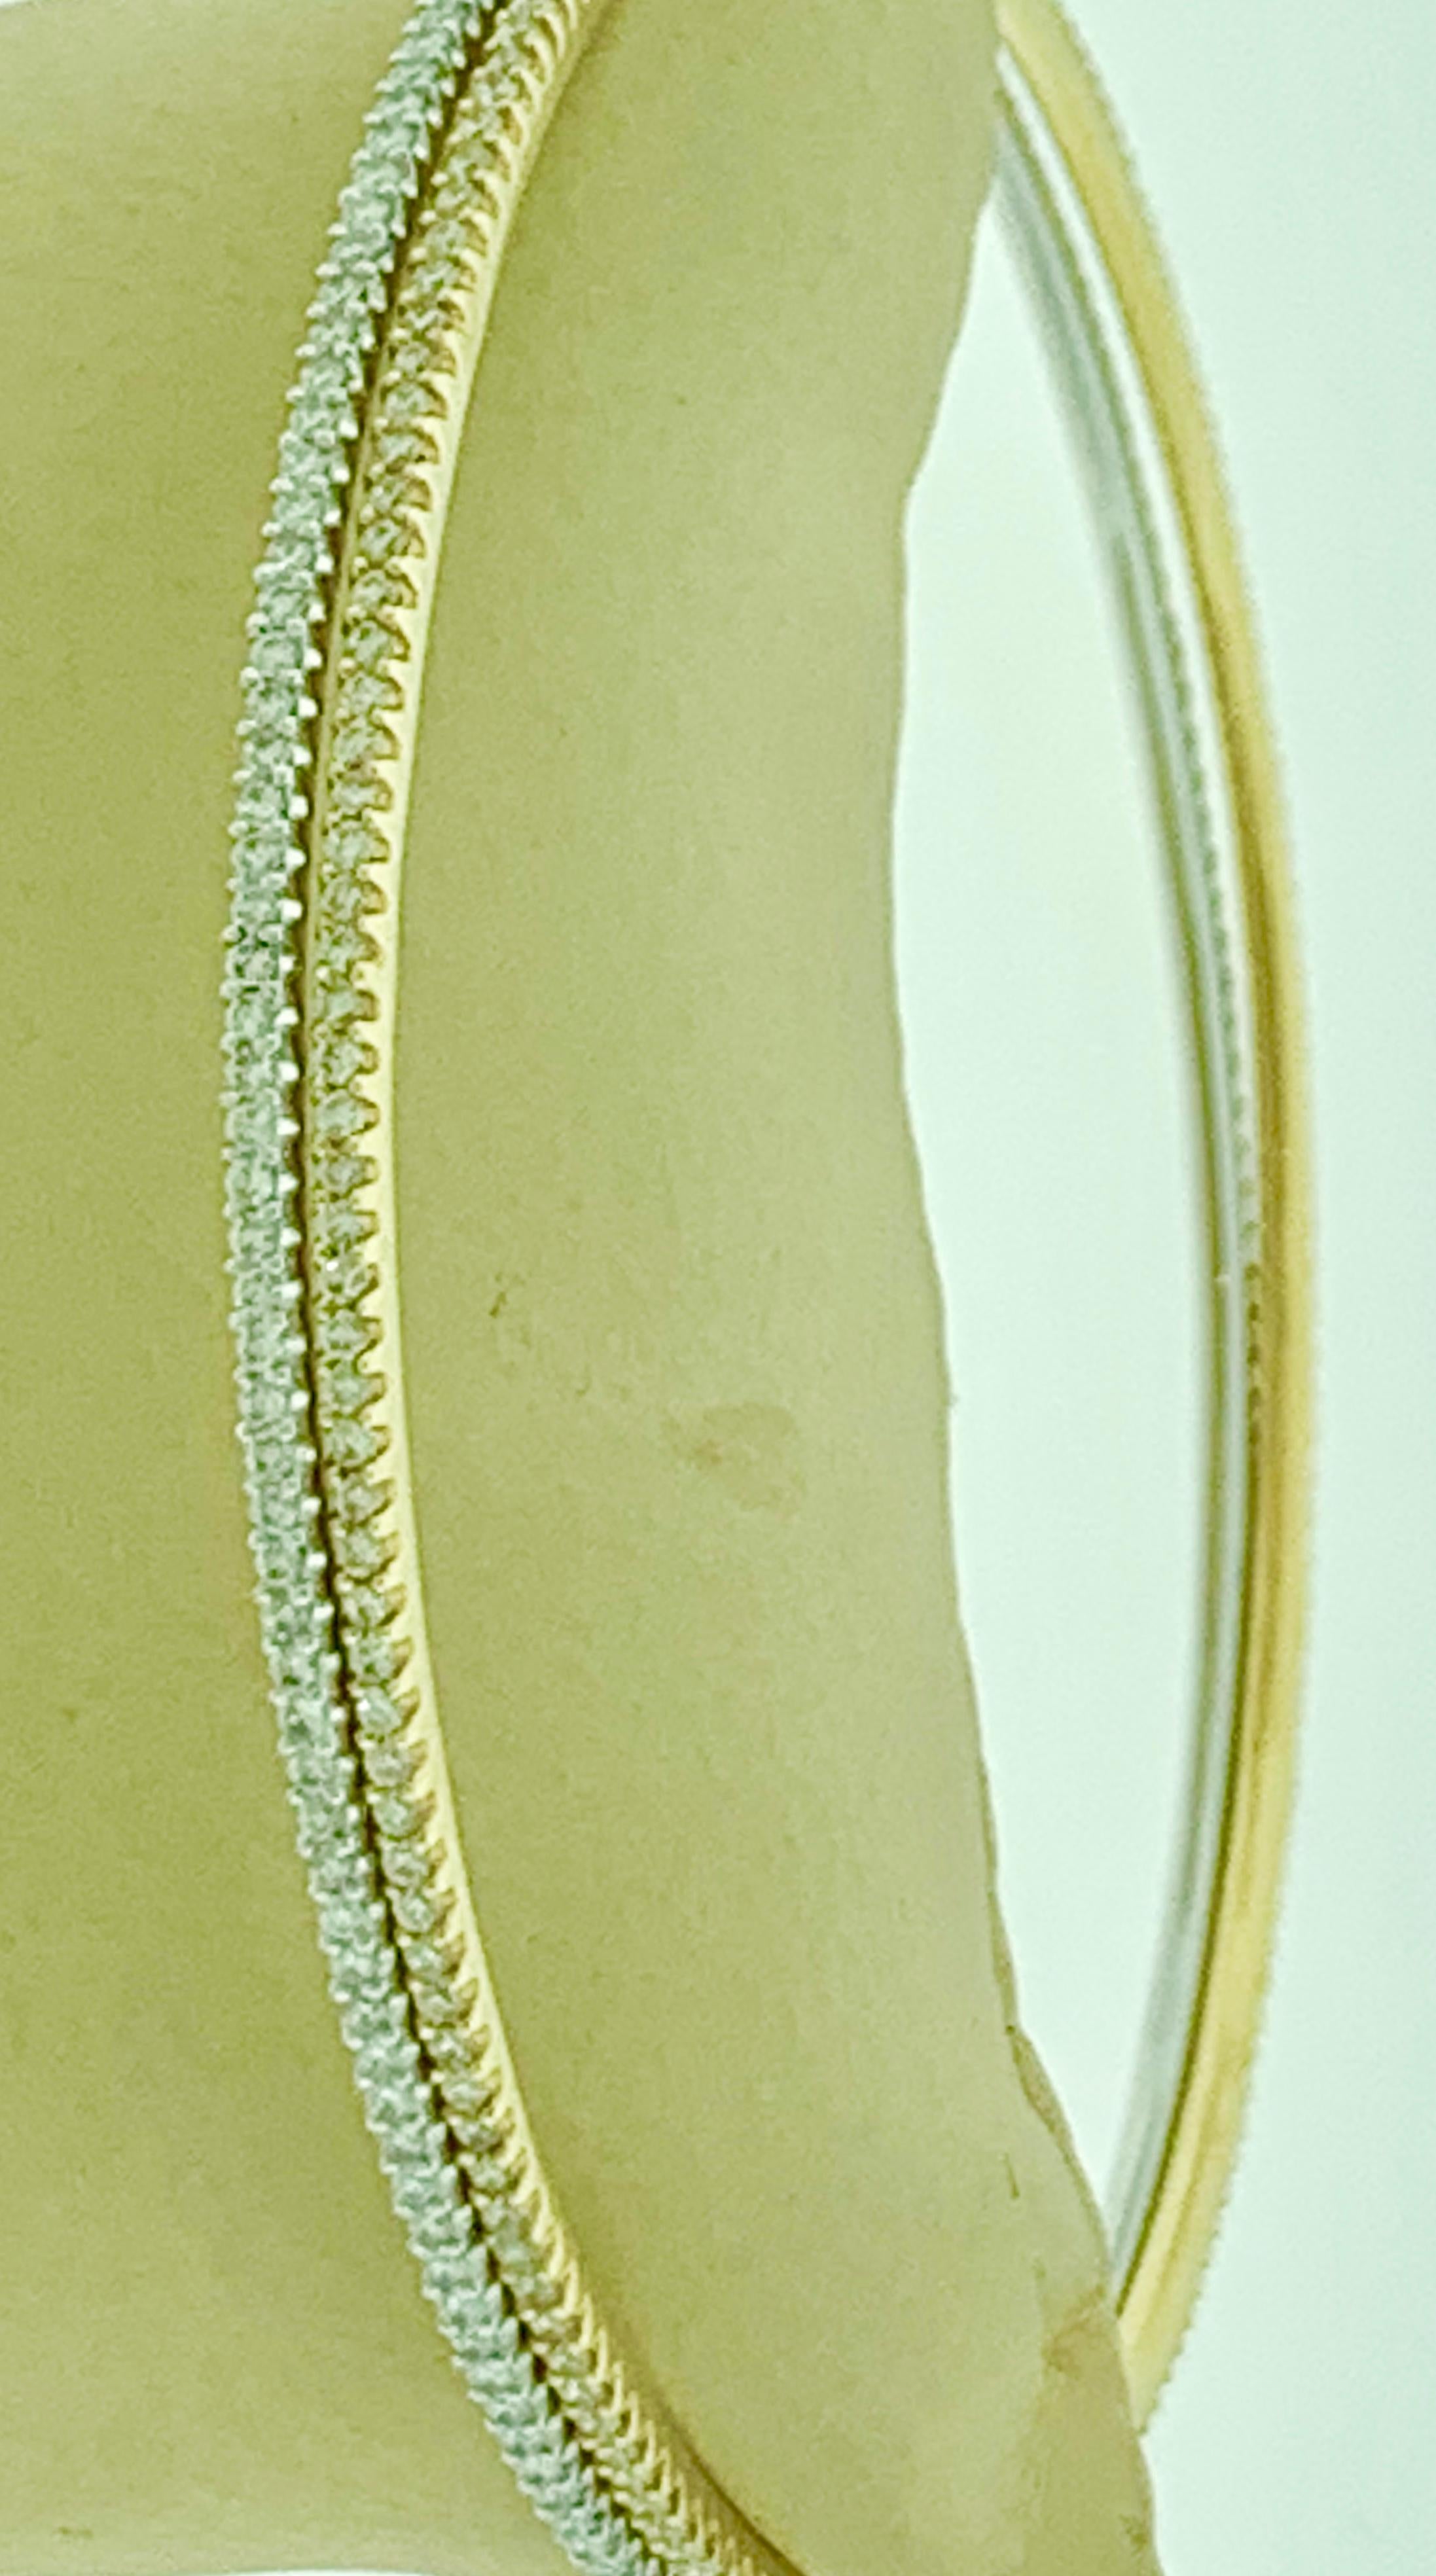 Das Tesora Contemporary Yellow & White 18 Karat Gold & Diamond Bangle Bracelet ist ein wunderschönes Schmuckstück, das mit Sicherheit alle Blicke auf sich zieht. Es besteht aus zwei Armreifen, die aus 18 Karat Gelbgold und 18 Karat Weißgold